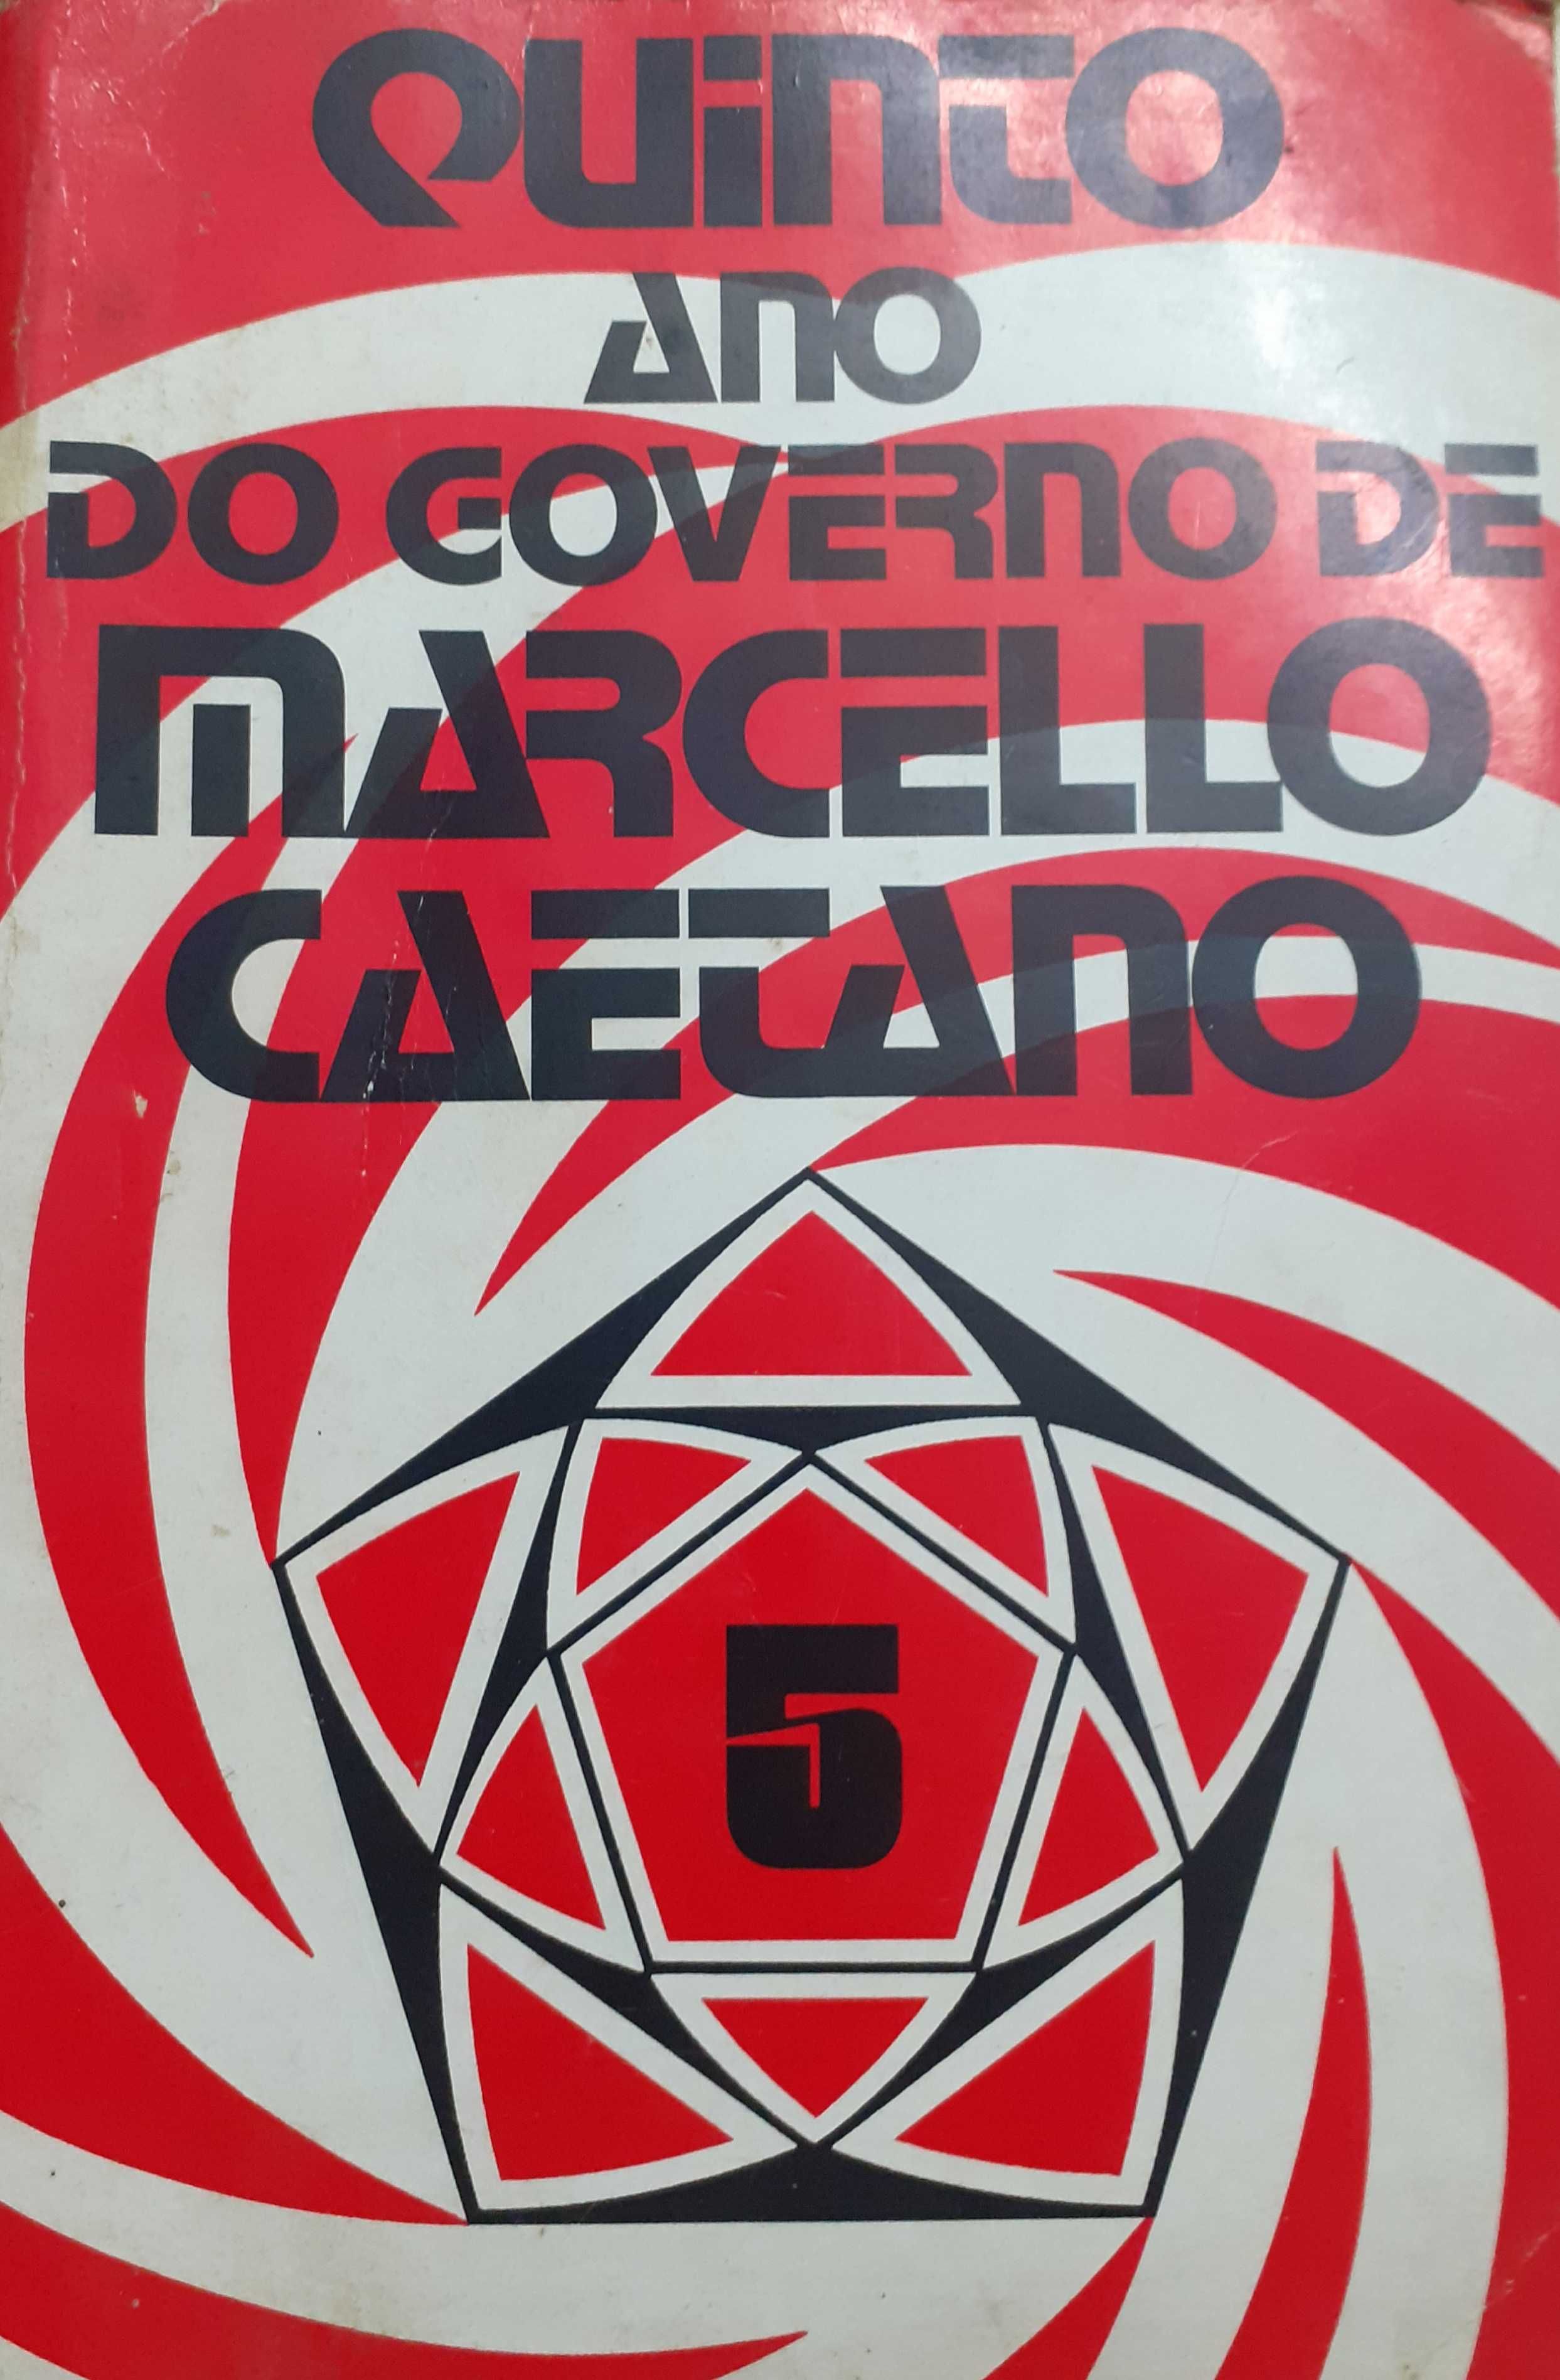 Quinto Ano do Governo de Marcelo Caetano